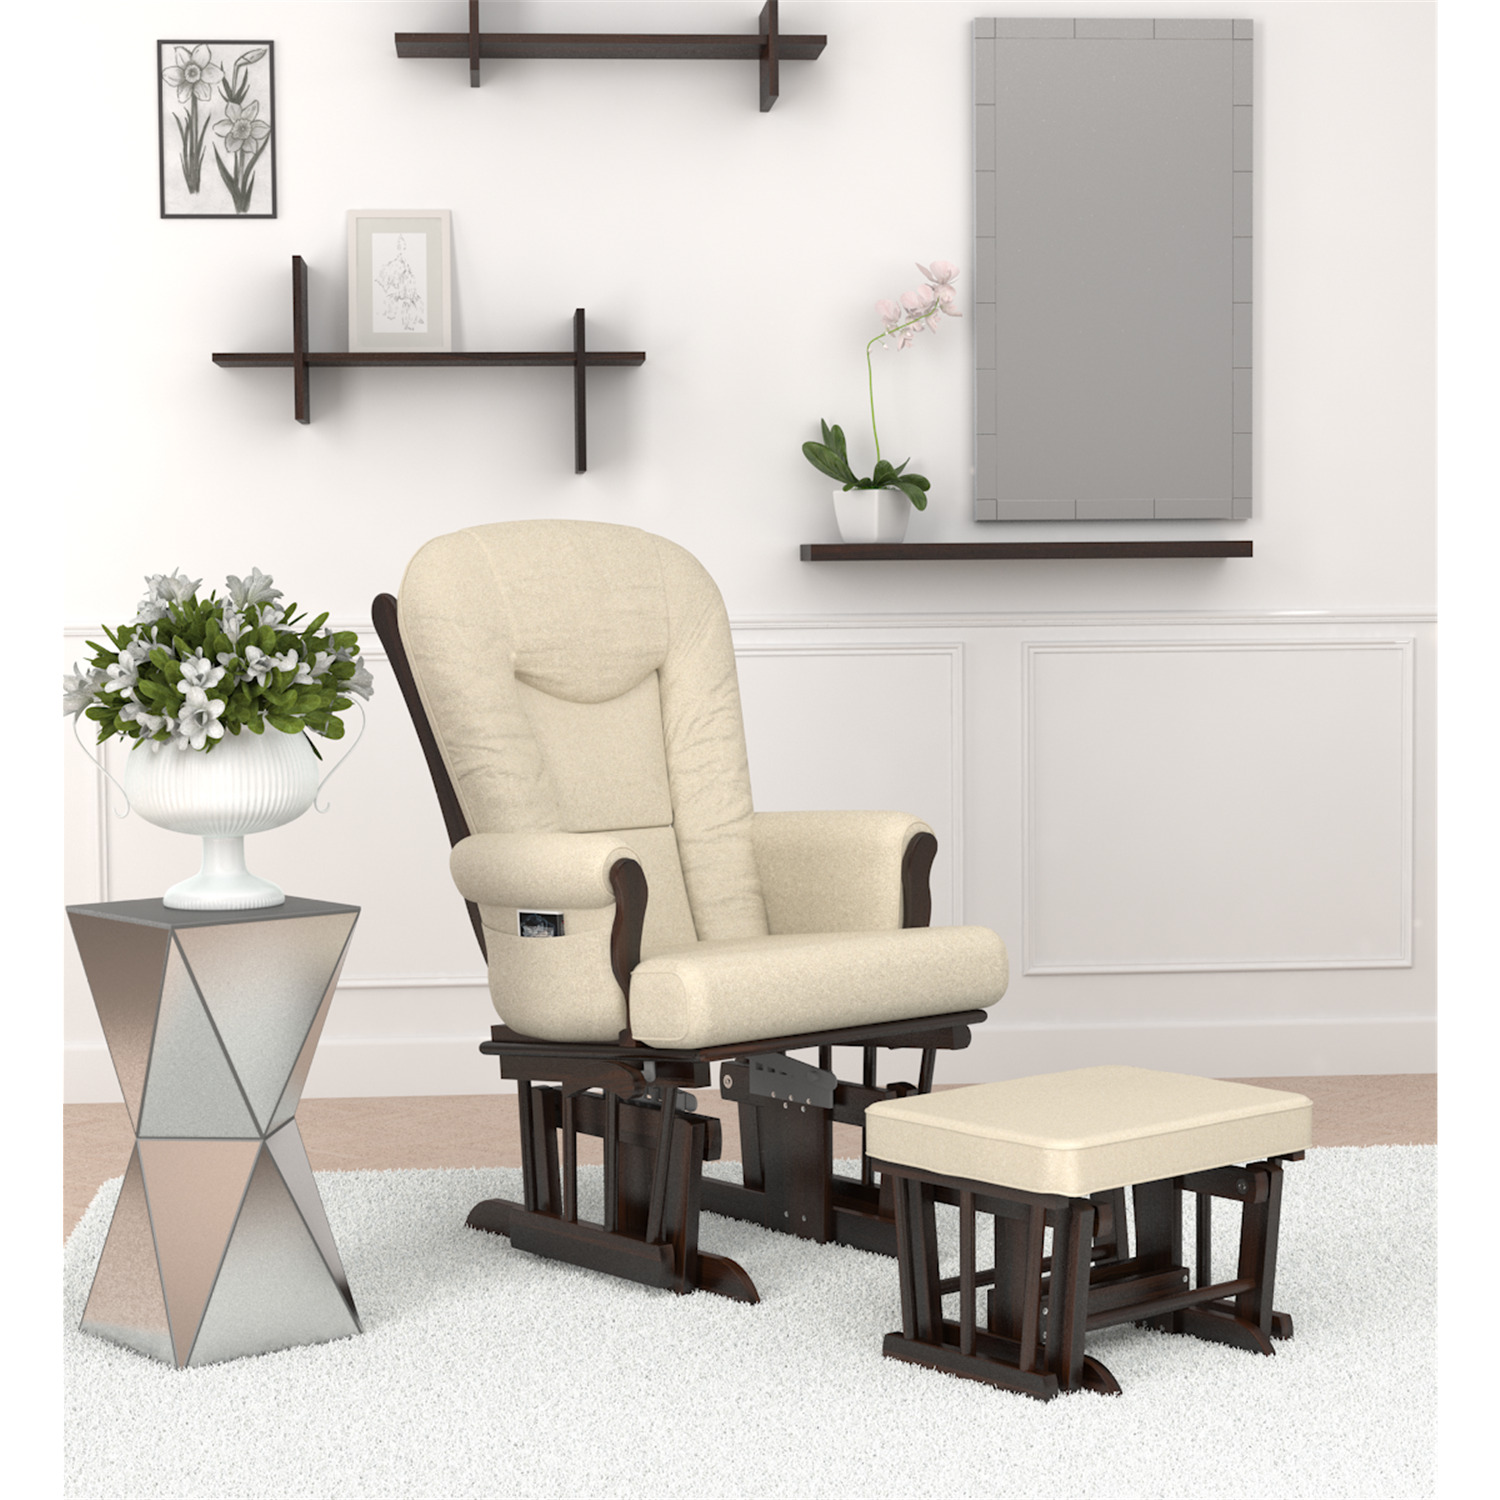 Naomi Home Storage & Wooden Legs Glider Rocking Chair, Cream - image 4 of 6